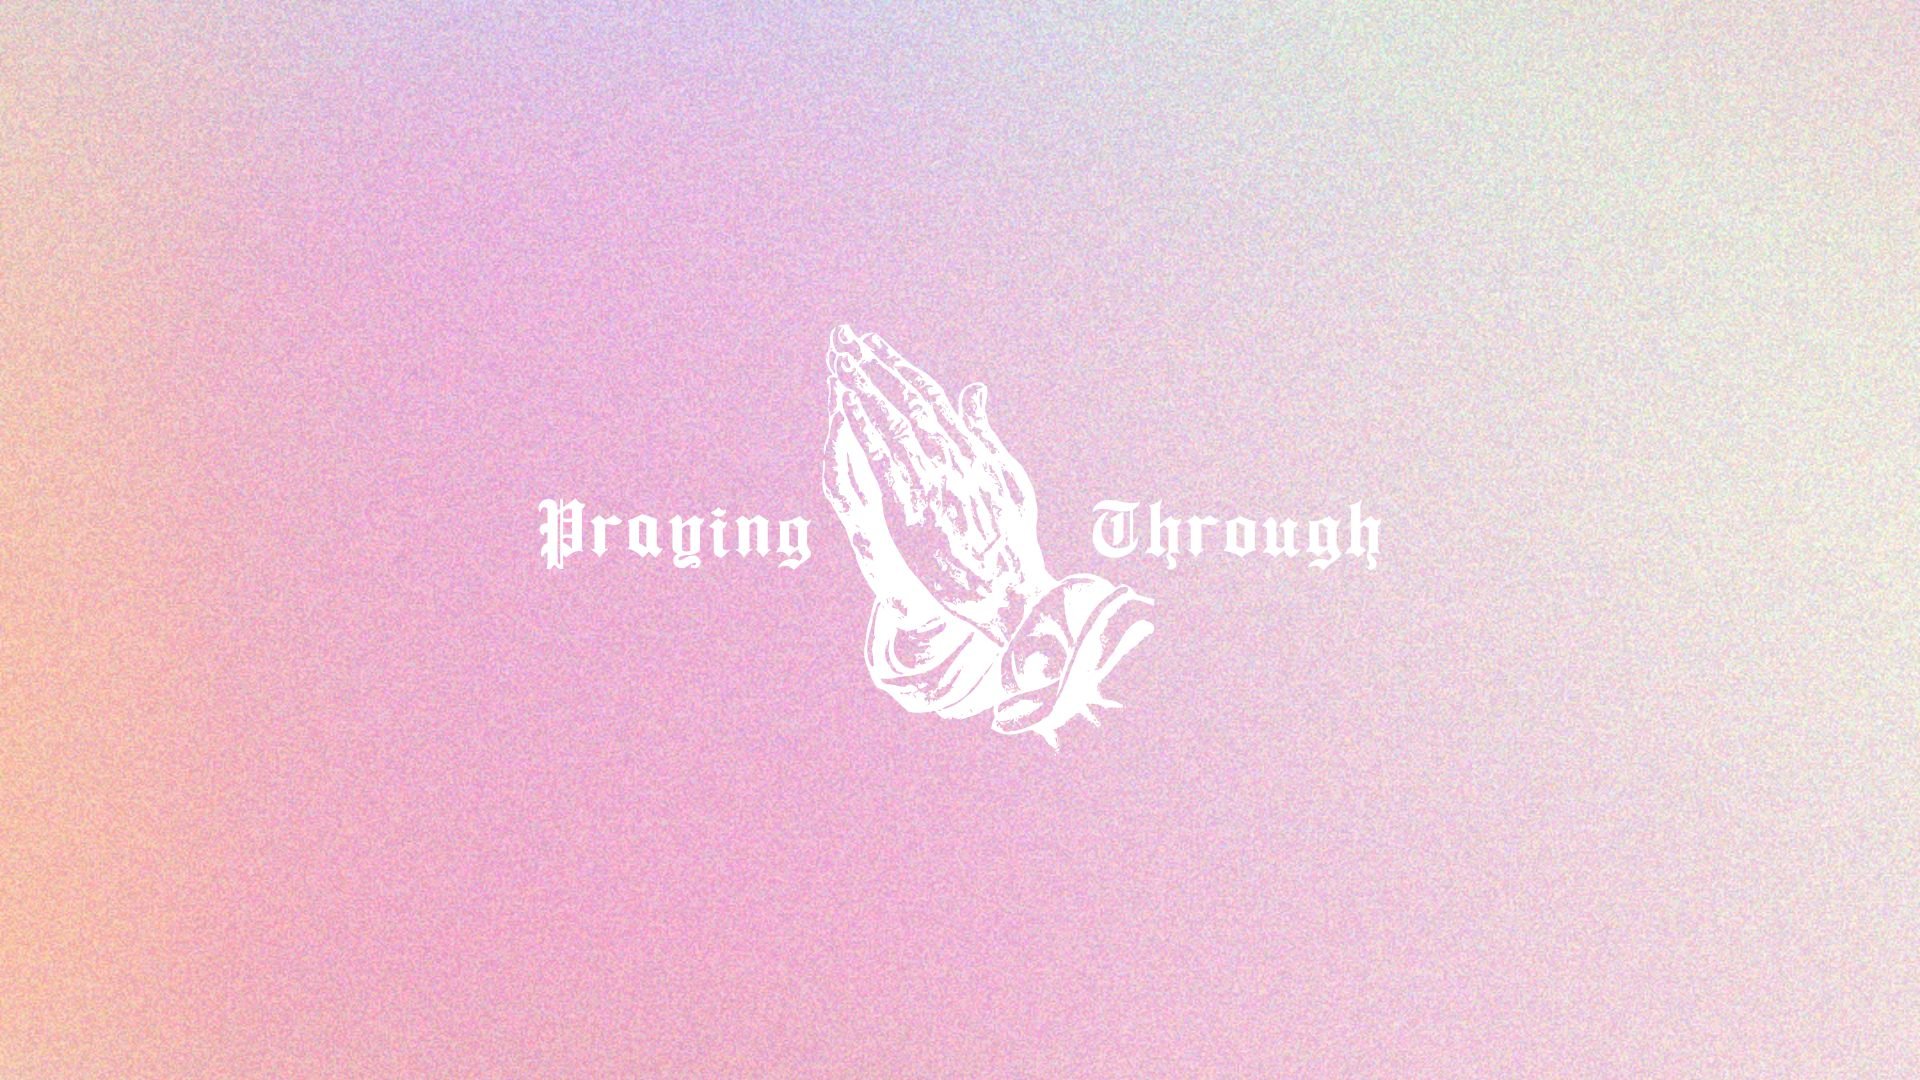 Praying Through.jpg